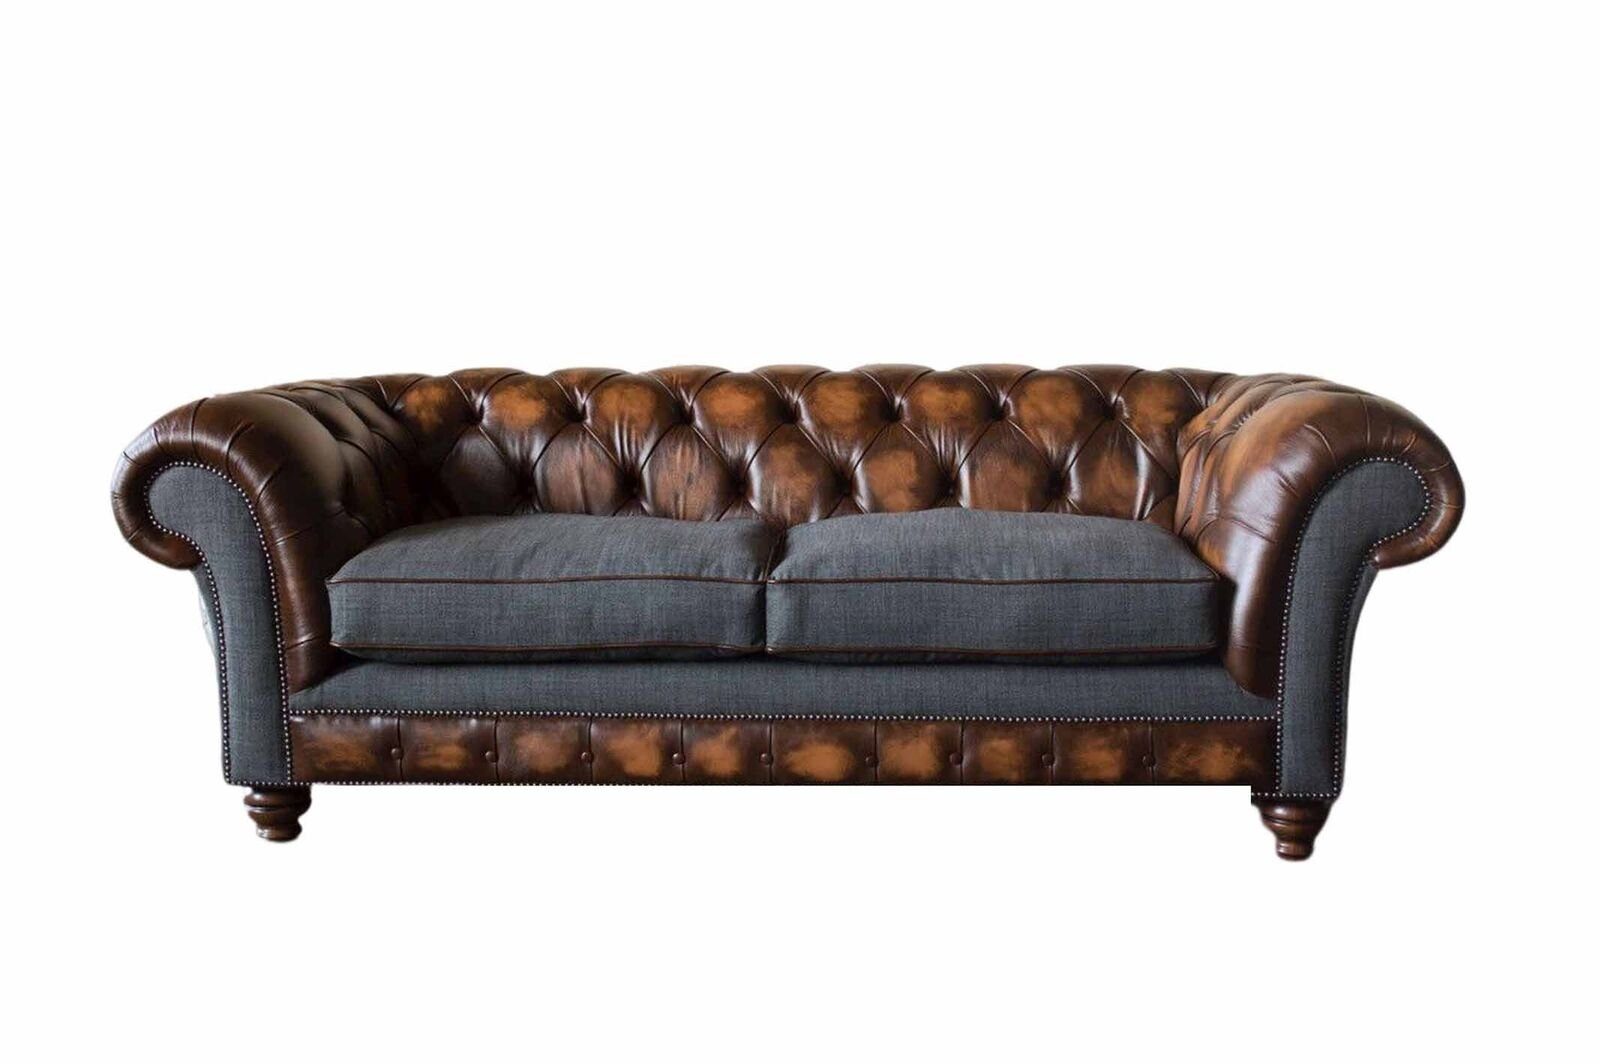 JVmoebel Sofa Chesterfield Design Luxus Polster Sofa Couch Sitz Wohnzimmer Leder Neu, Made in Europe